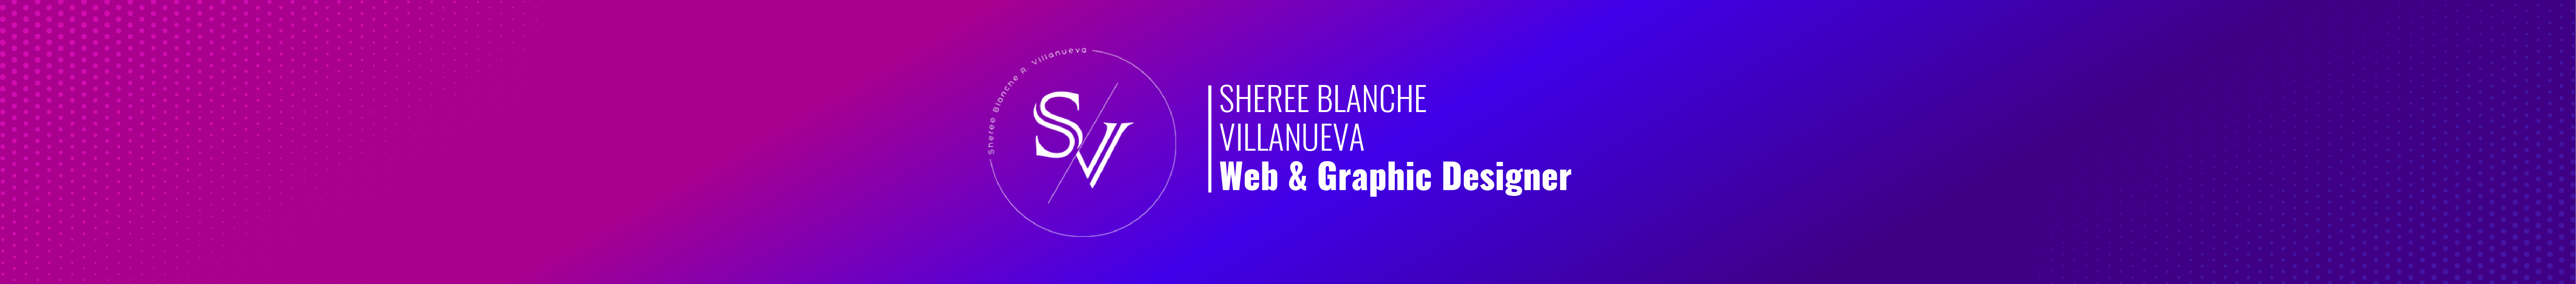 Sheree Blanche Villanueva's profile banner